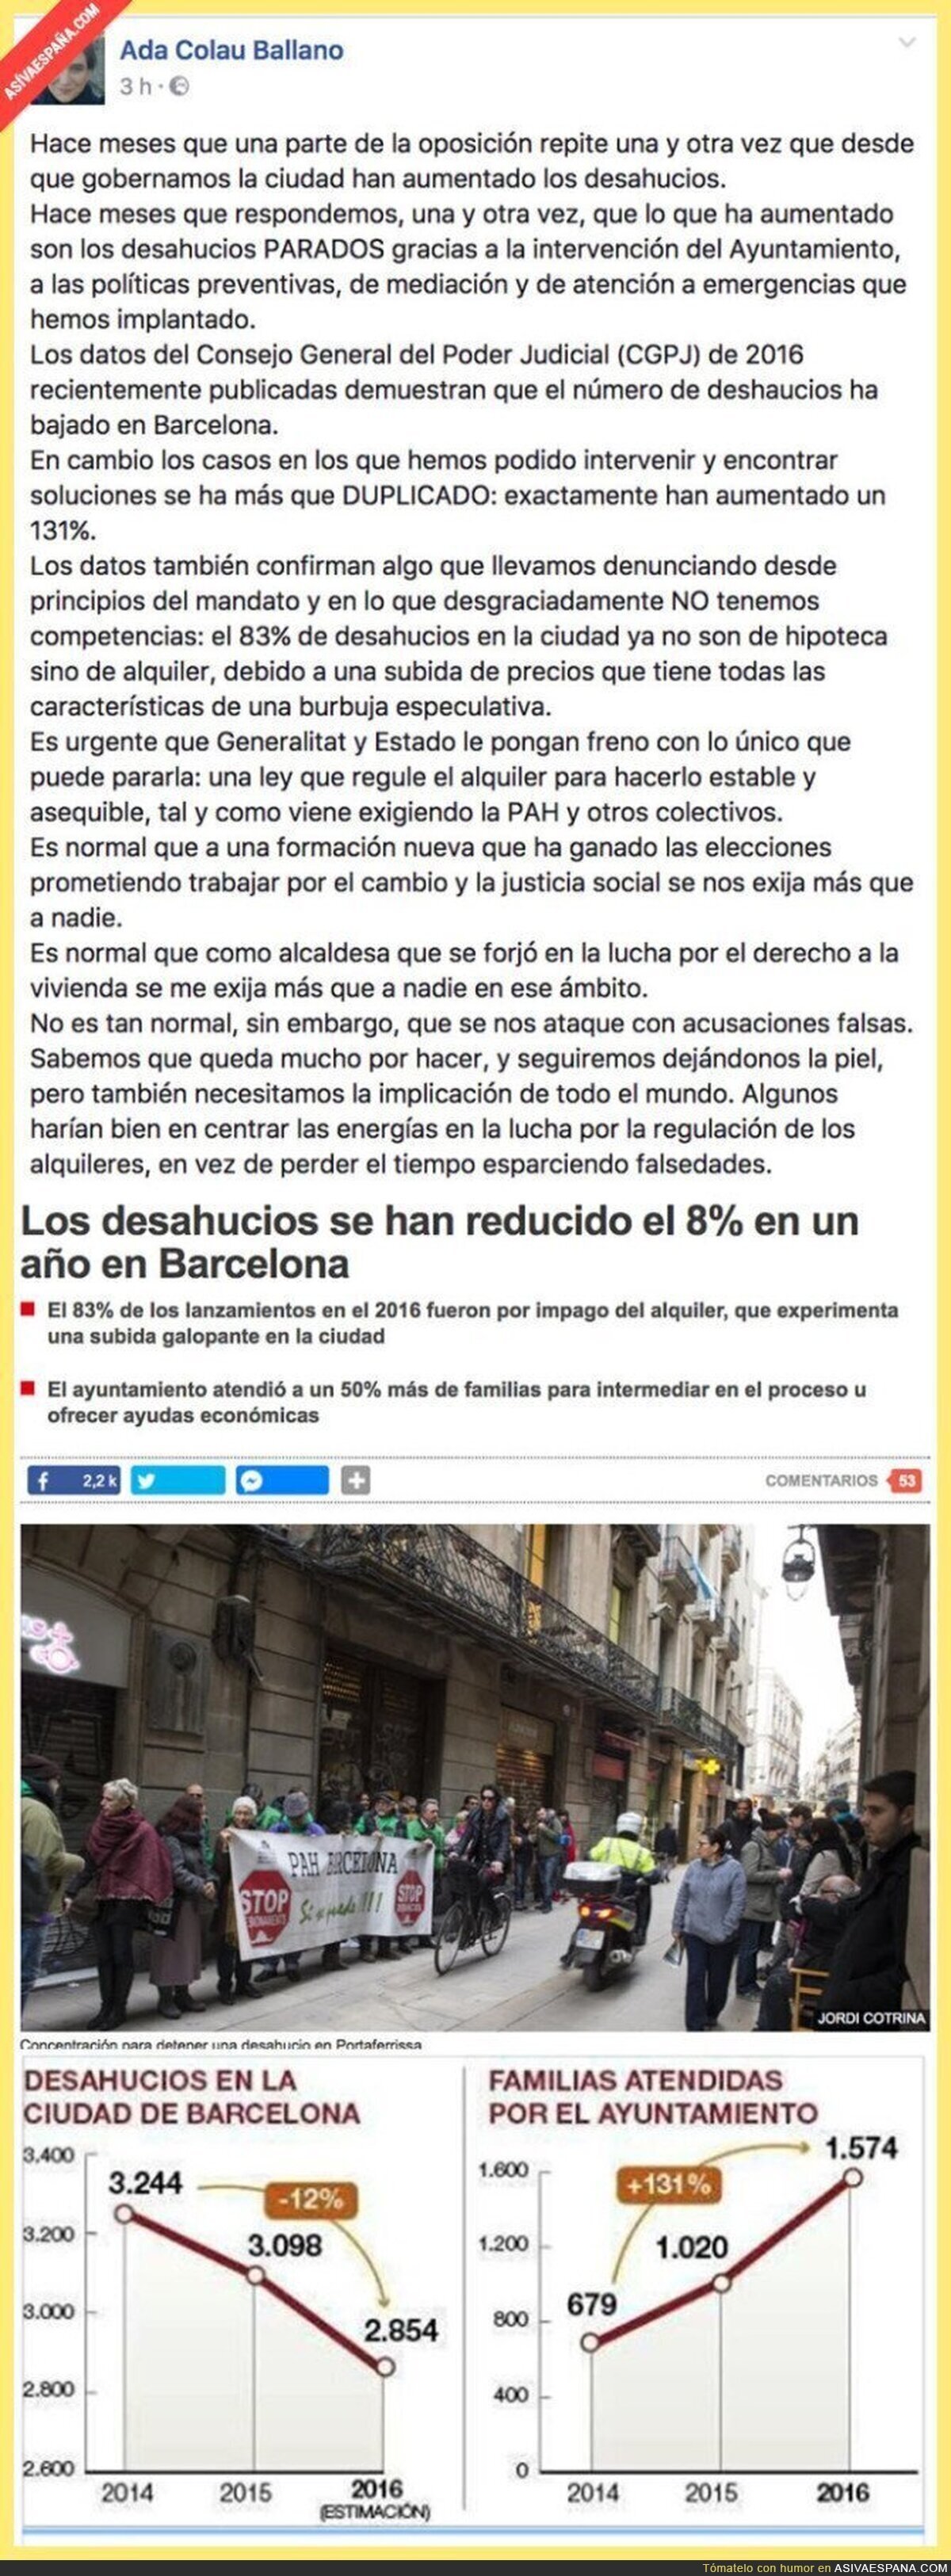 Ada Colau explica como en Barcelona han disminuido los desahucios desde que ella gobierna